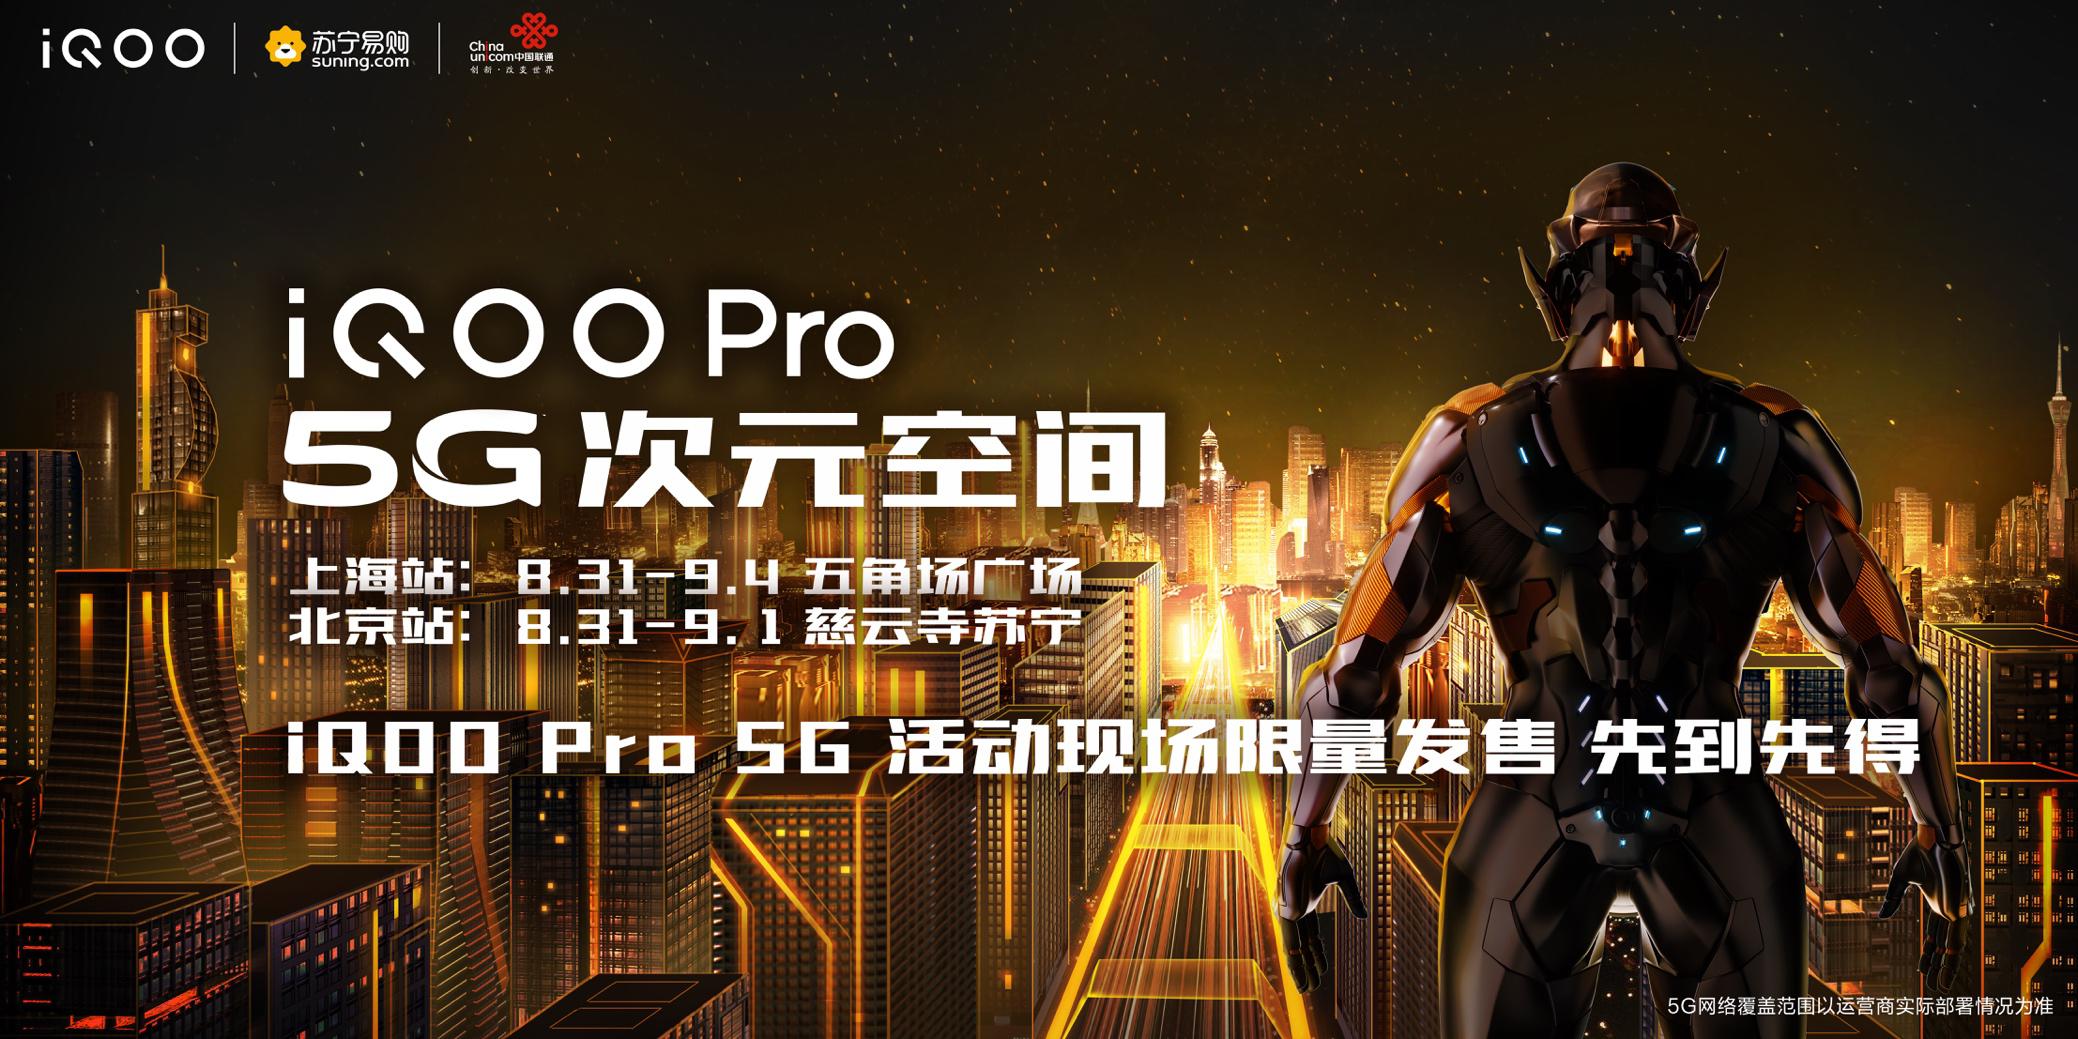 明天上午11点 iQOO Pro 5G版线下抢先限量发售